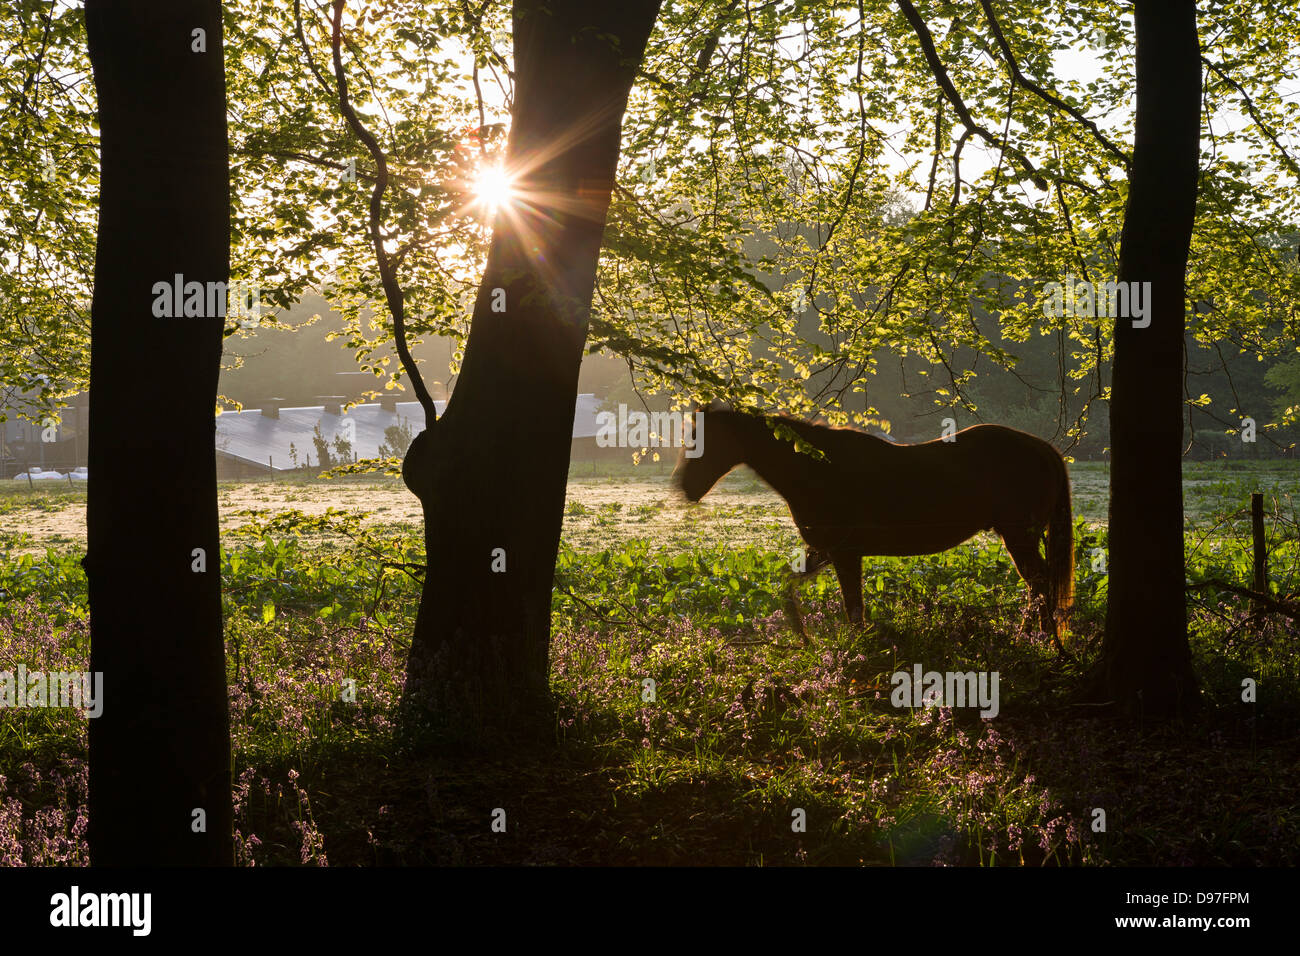 Cheval et forestiers du printemps à l'aube, West Woods, Lockeridge, Wiltshire, Angleterre. Printemps (mai). Banque D'Images